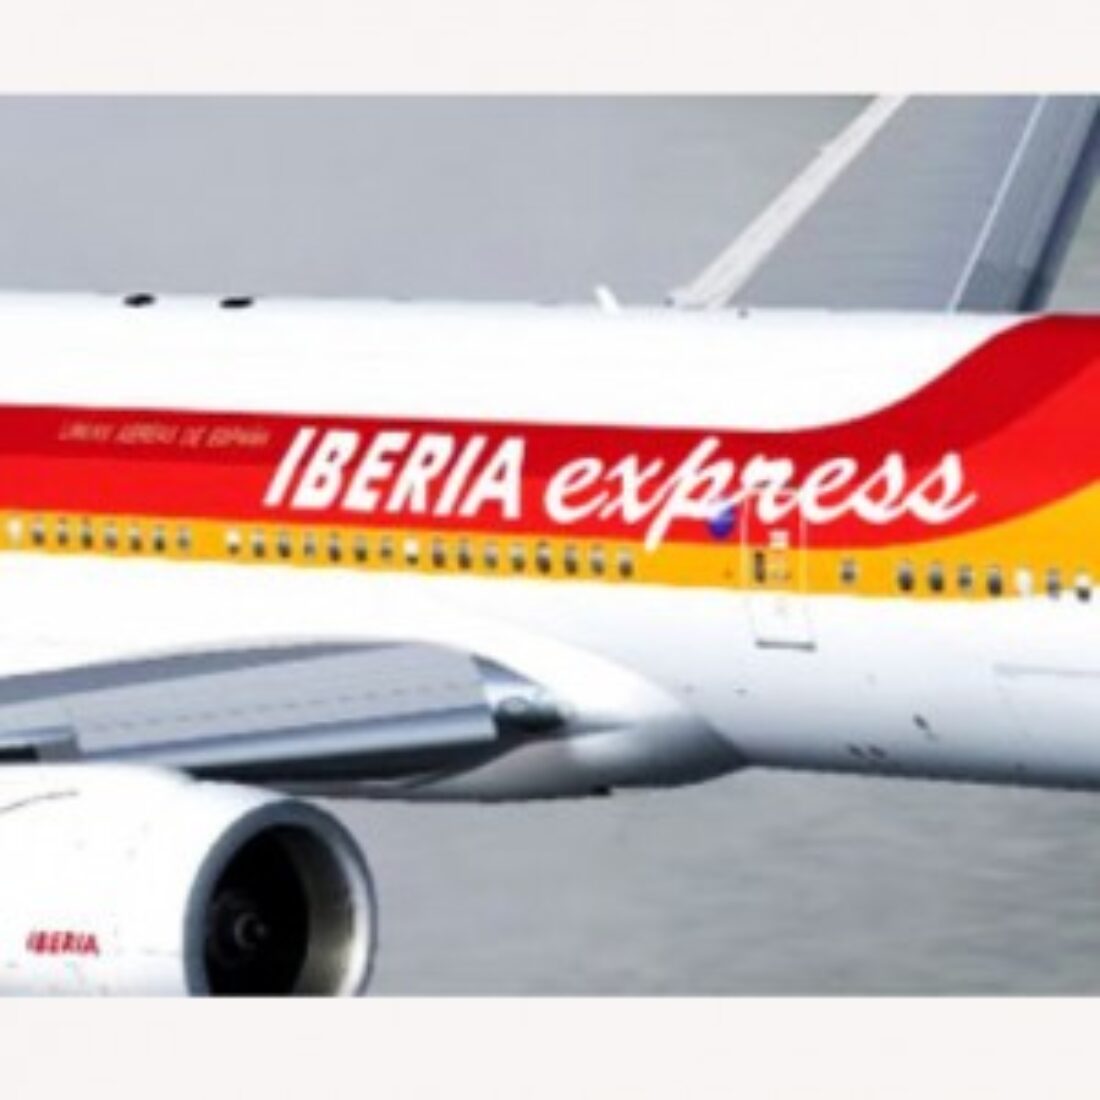 Madrid: Manifestación «No a la segegación de Iberia Express»